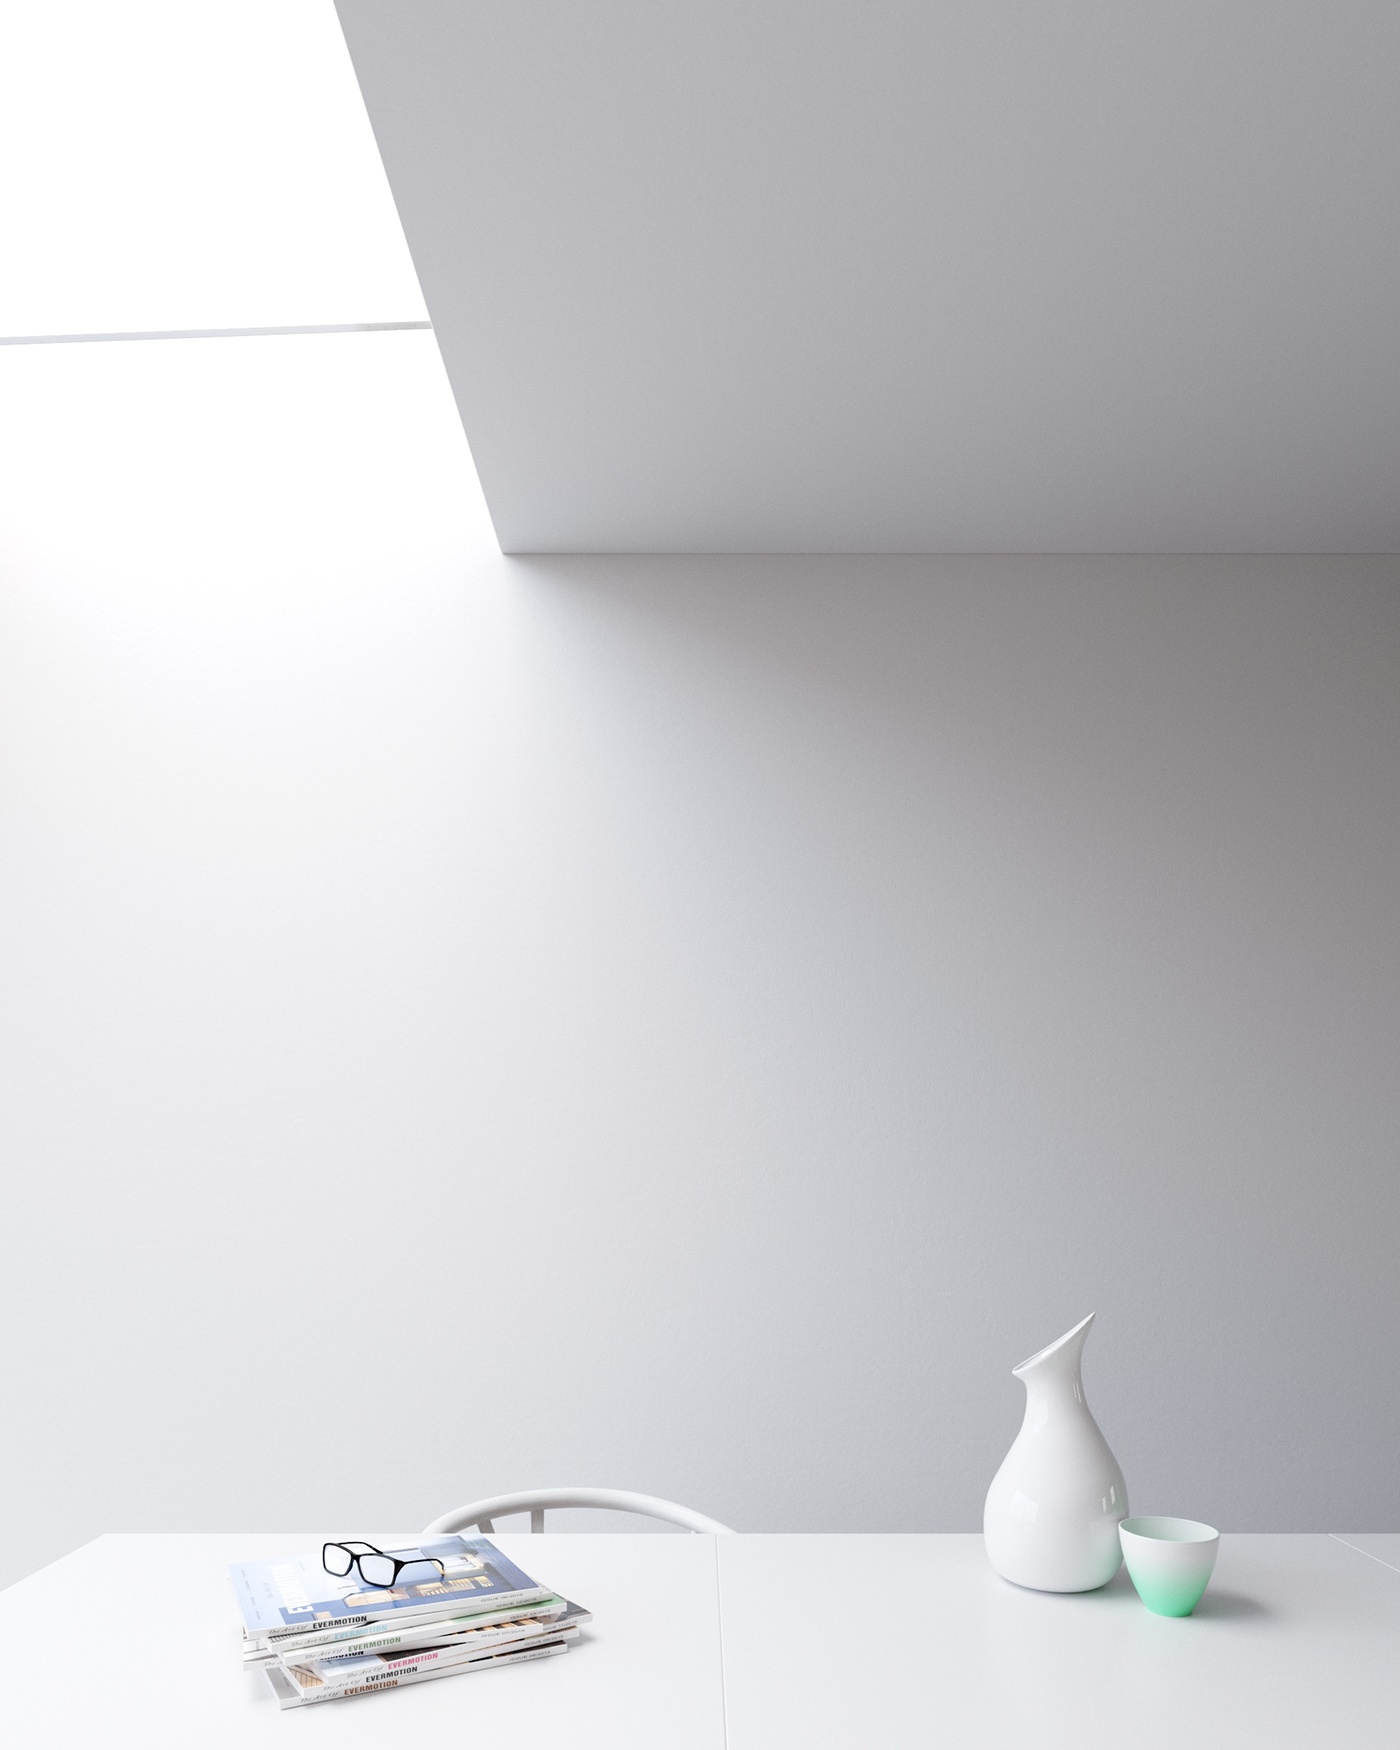 architecture interior design  Minimalism Scandinavian kitchen visuliazation 3D rendernig